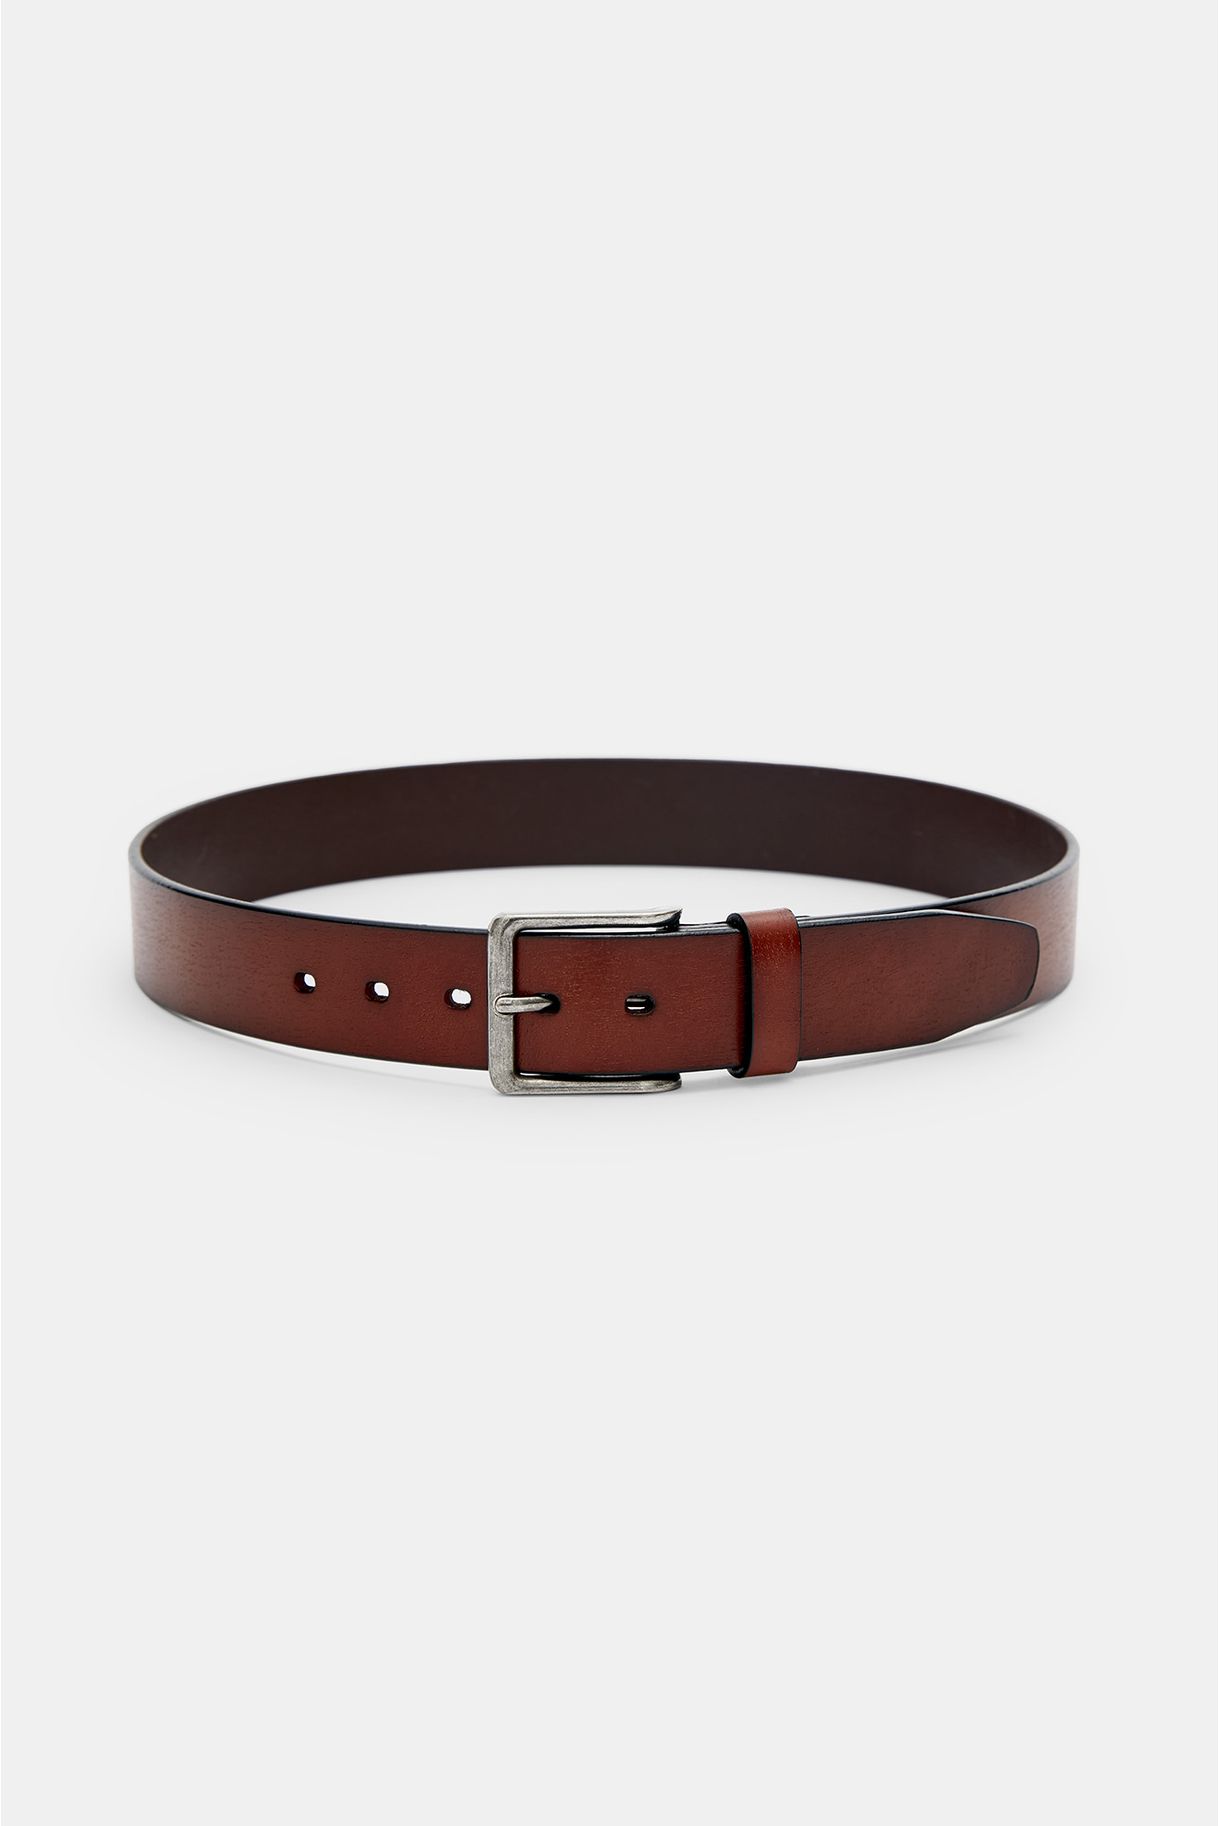 Basic men's leather belt